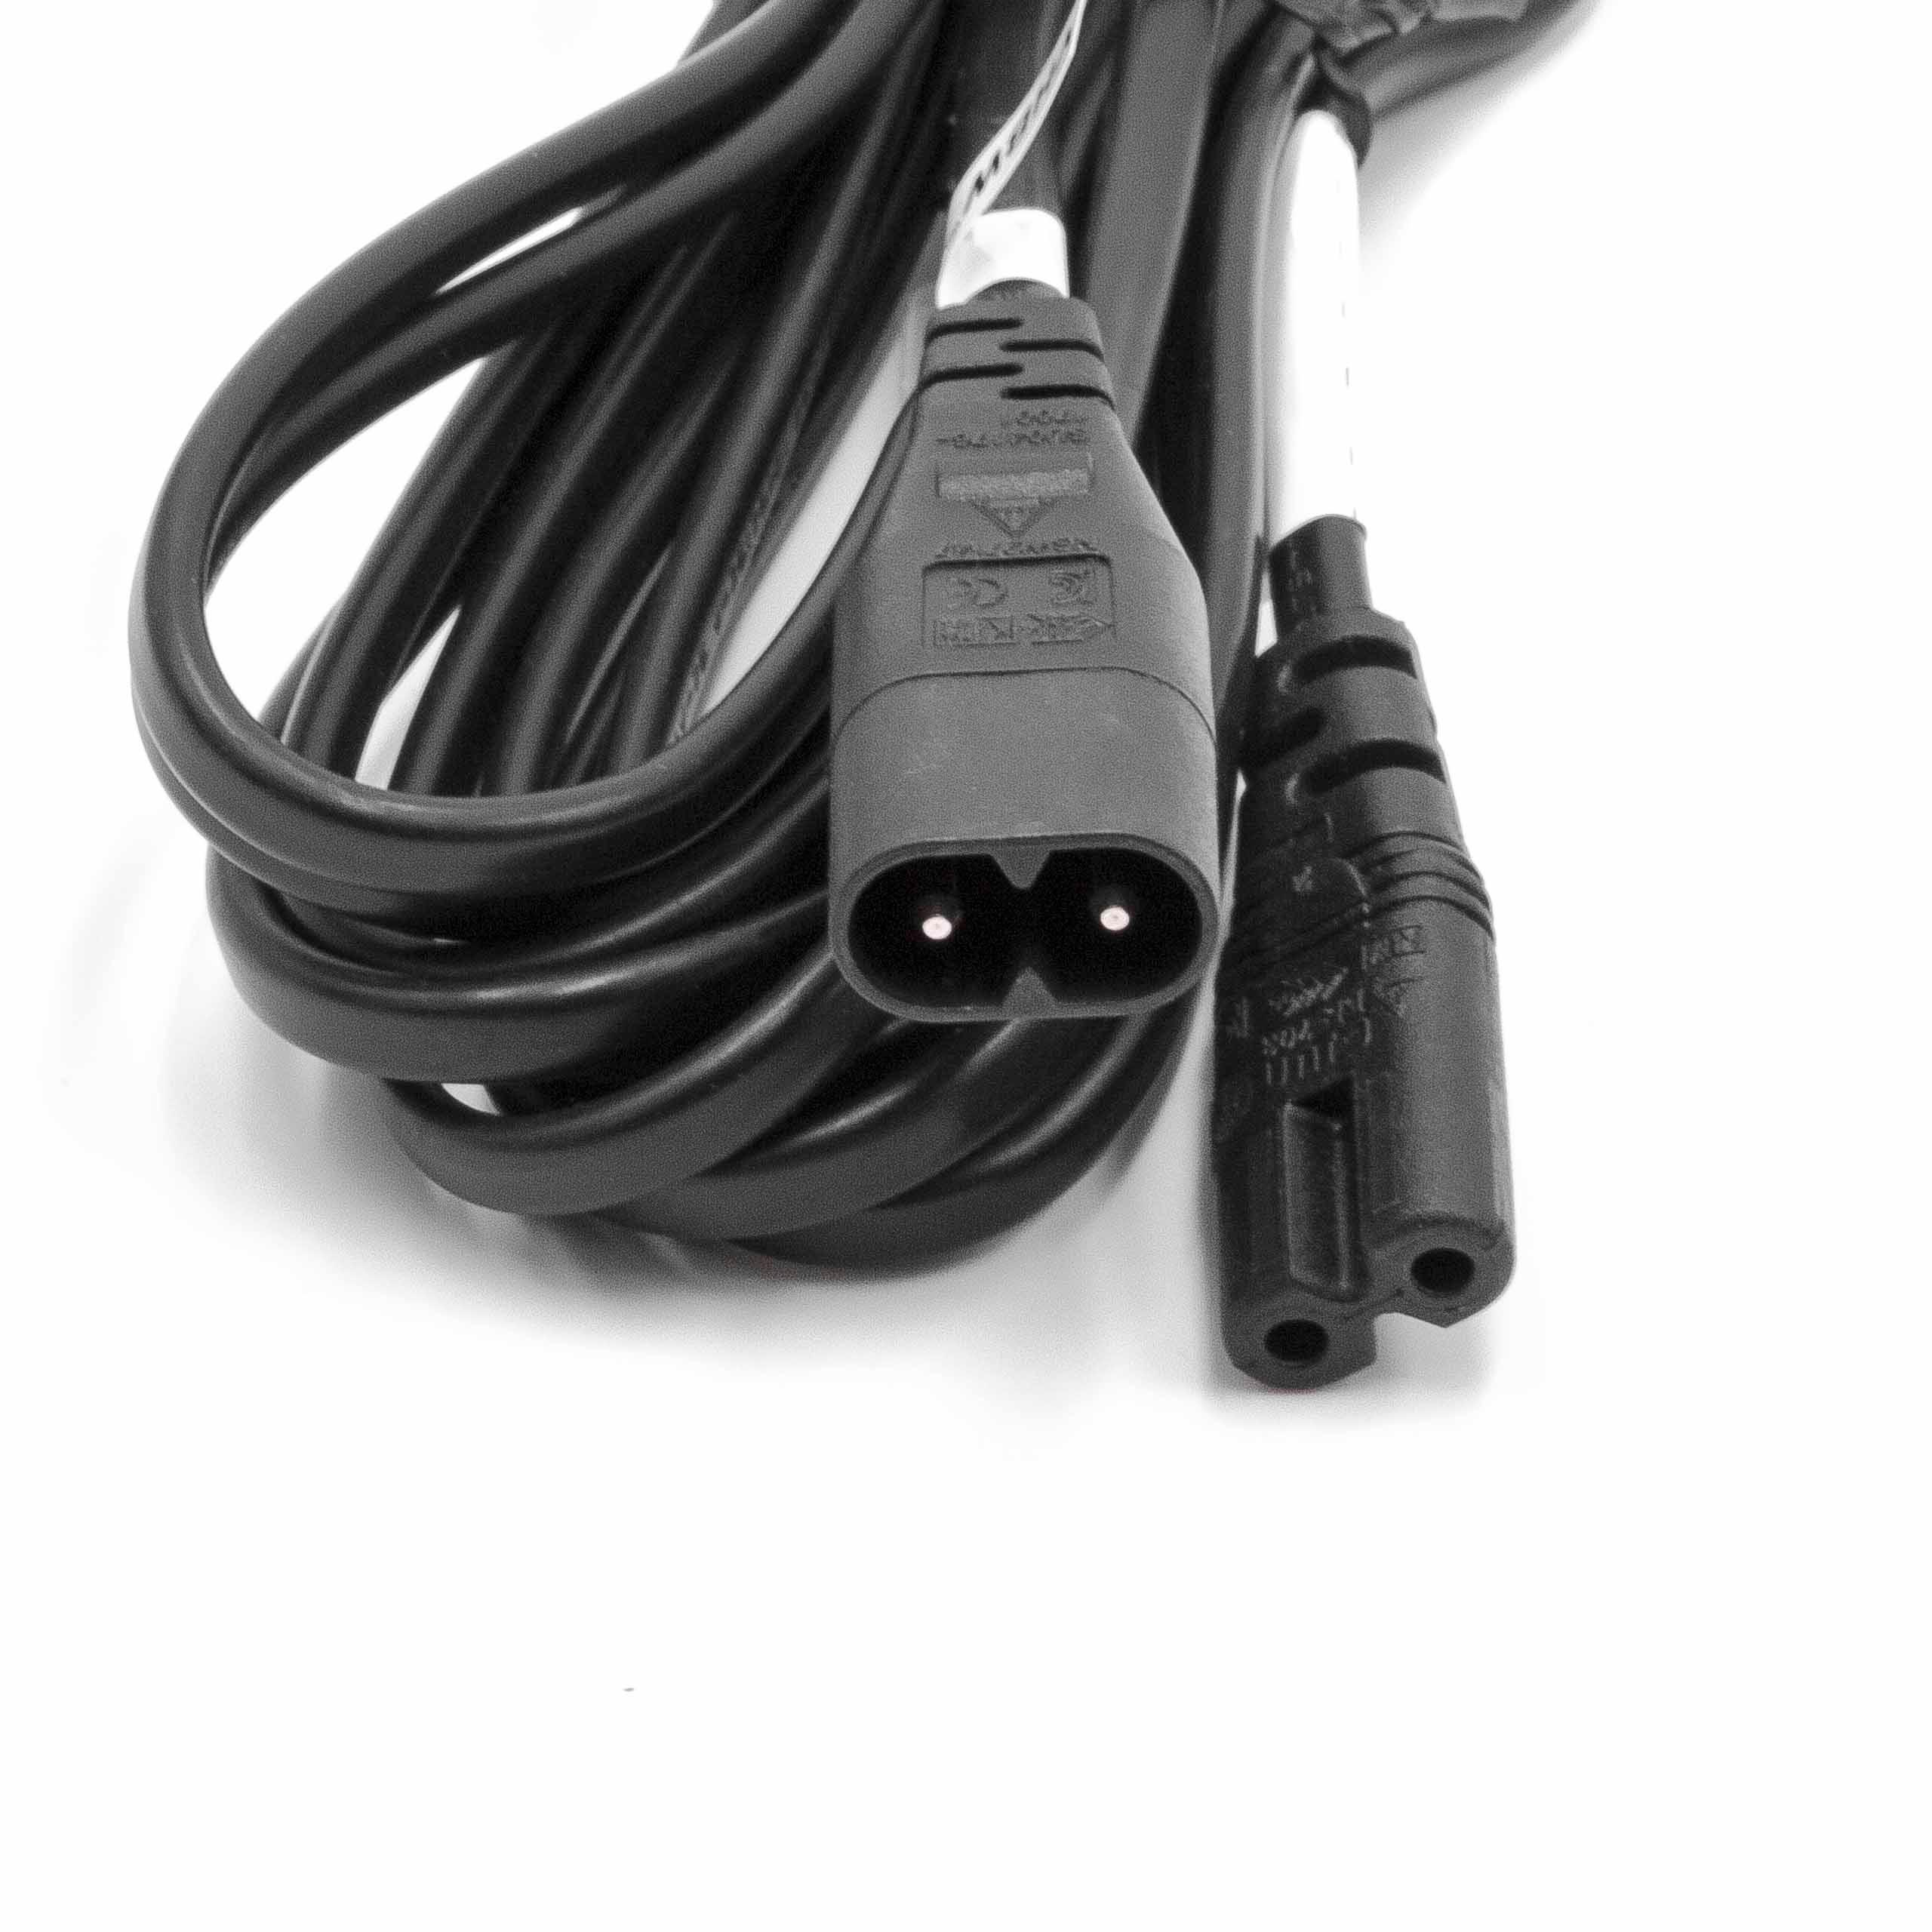 C8 / C7 Cable eléctrico, cable de prolongación, clavija hembra a clavija macho 3m para pequeños electrodomésti